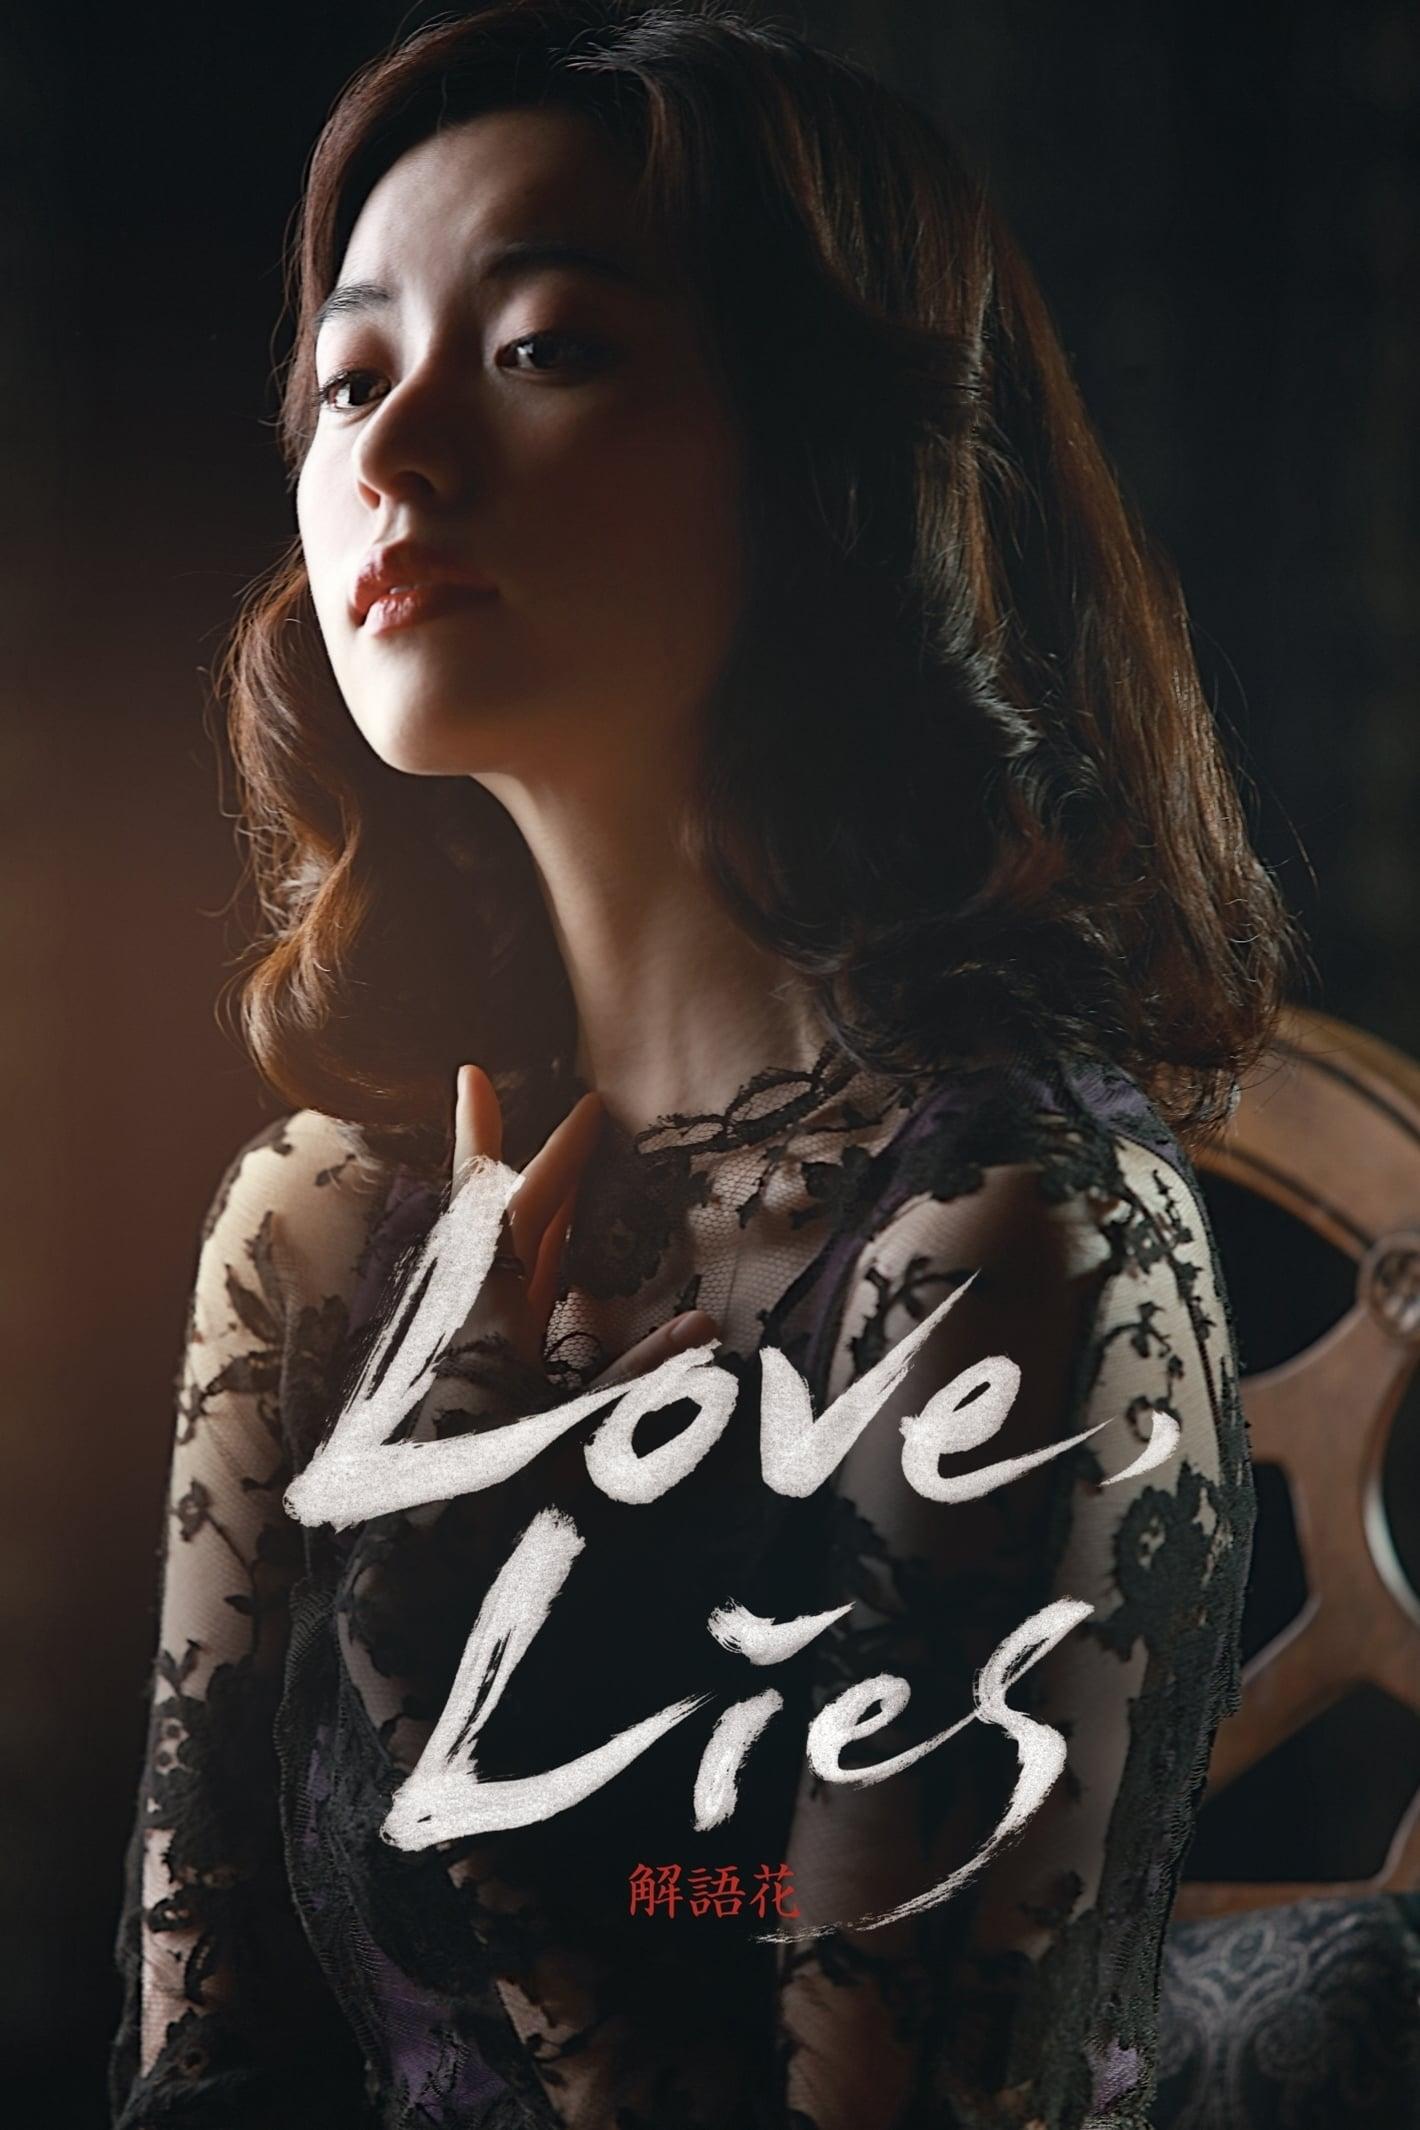 Love, Lies poster